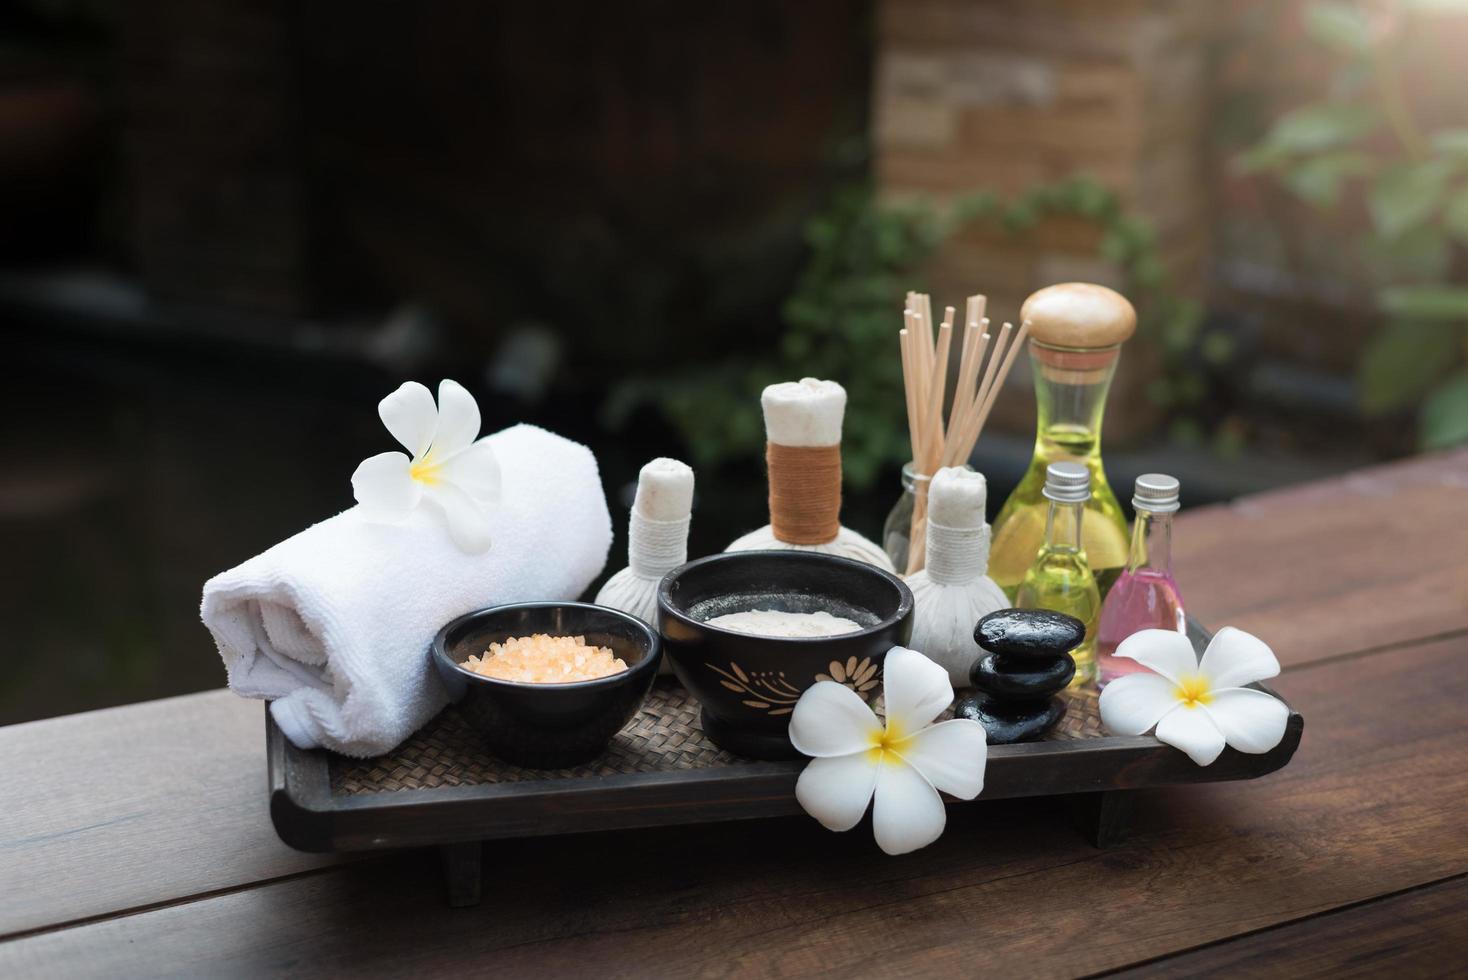 Bolas de compresión de masaje spa tailandés y objetos de spa de sal foto